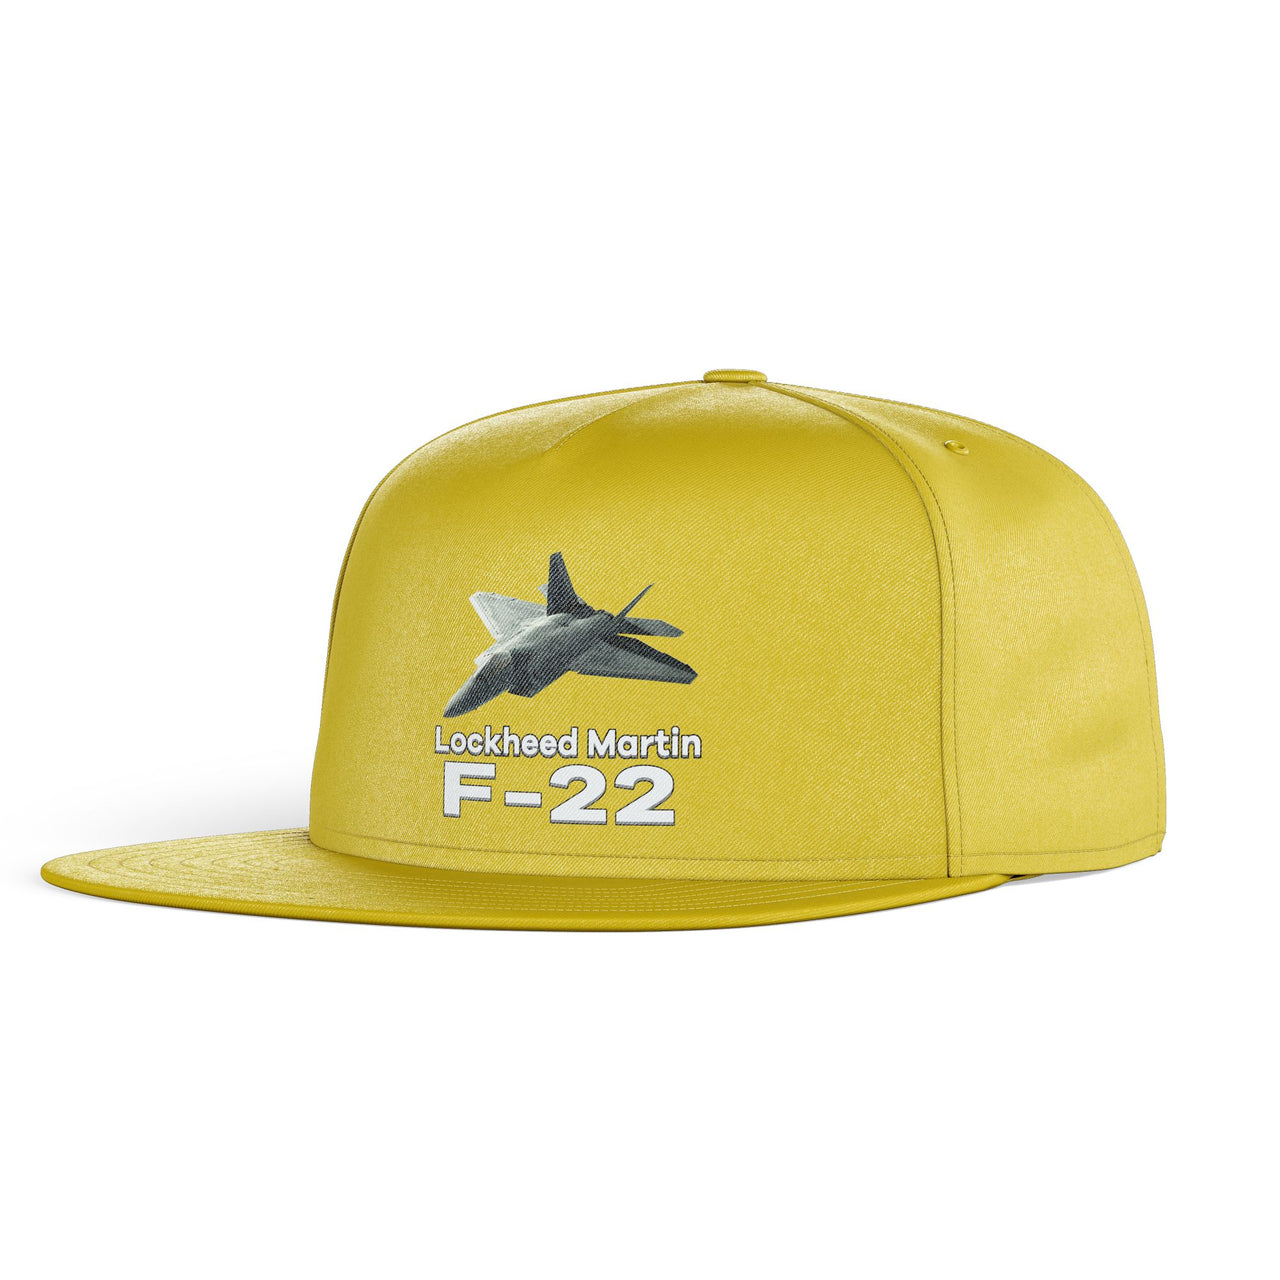 The Lockheed Martin F22 Designed Snapback Caps & Hats